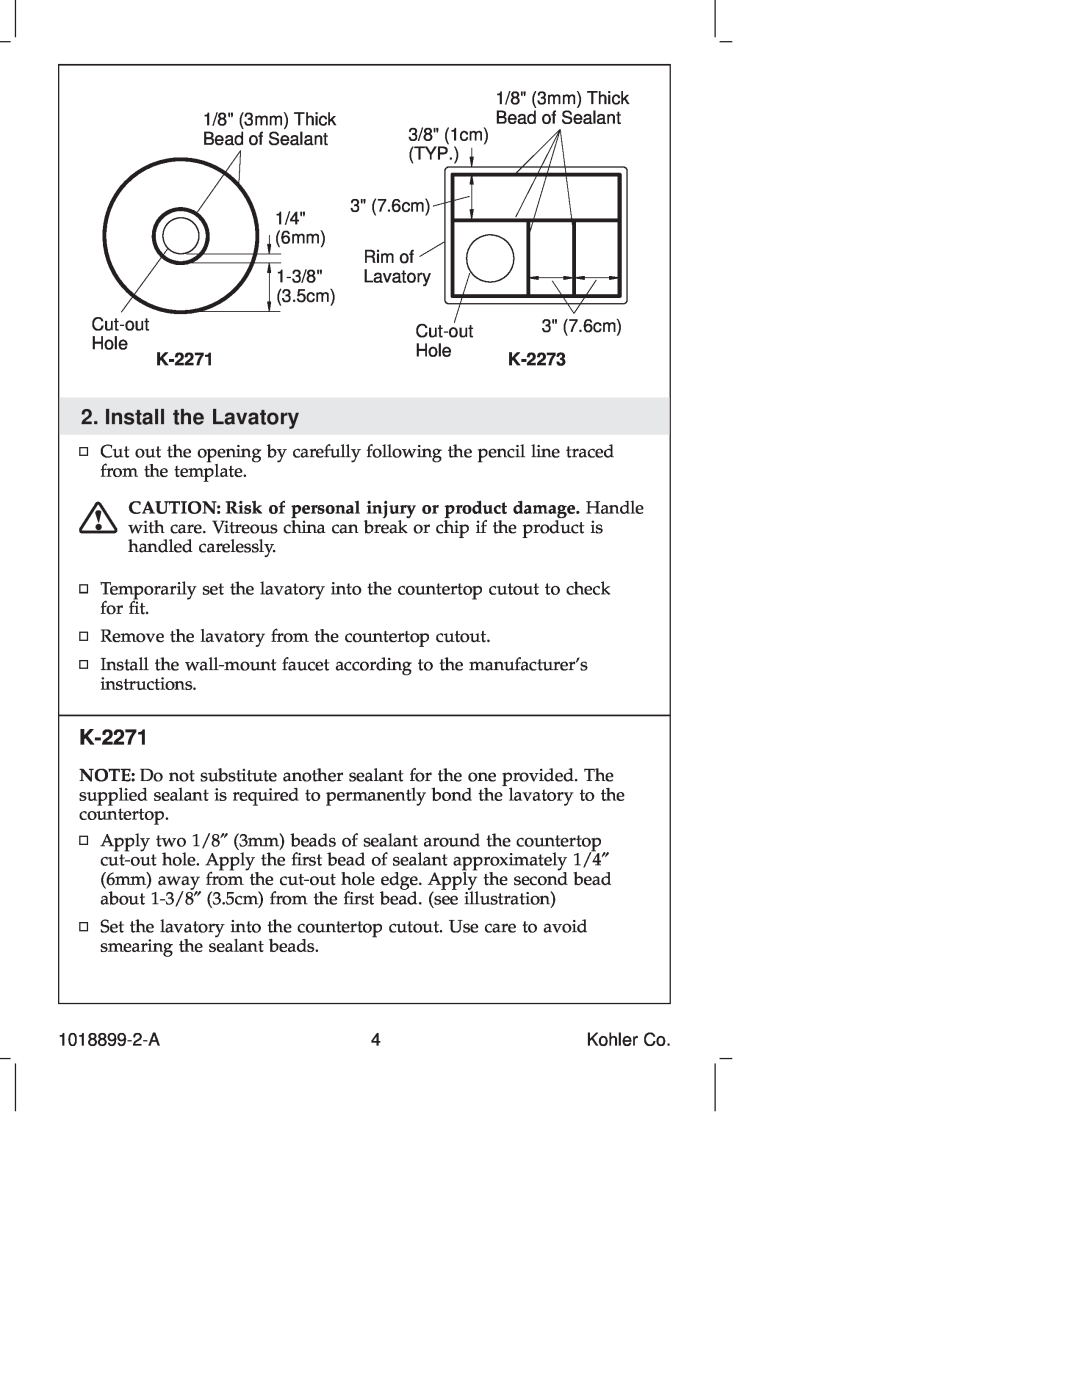 Kohler K-2273 manual Install the Lavatory, K-2271 